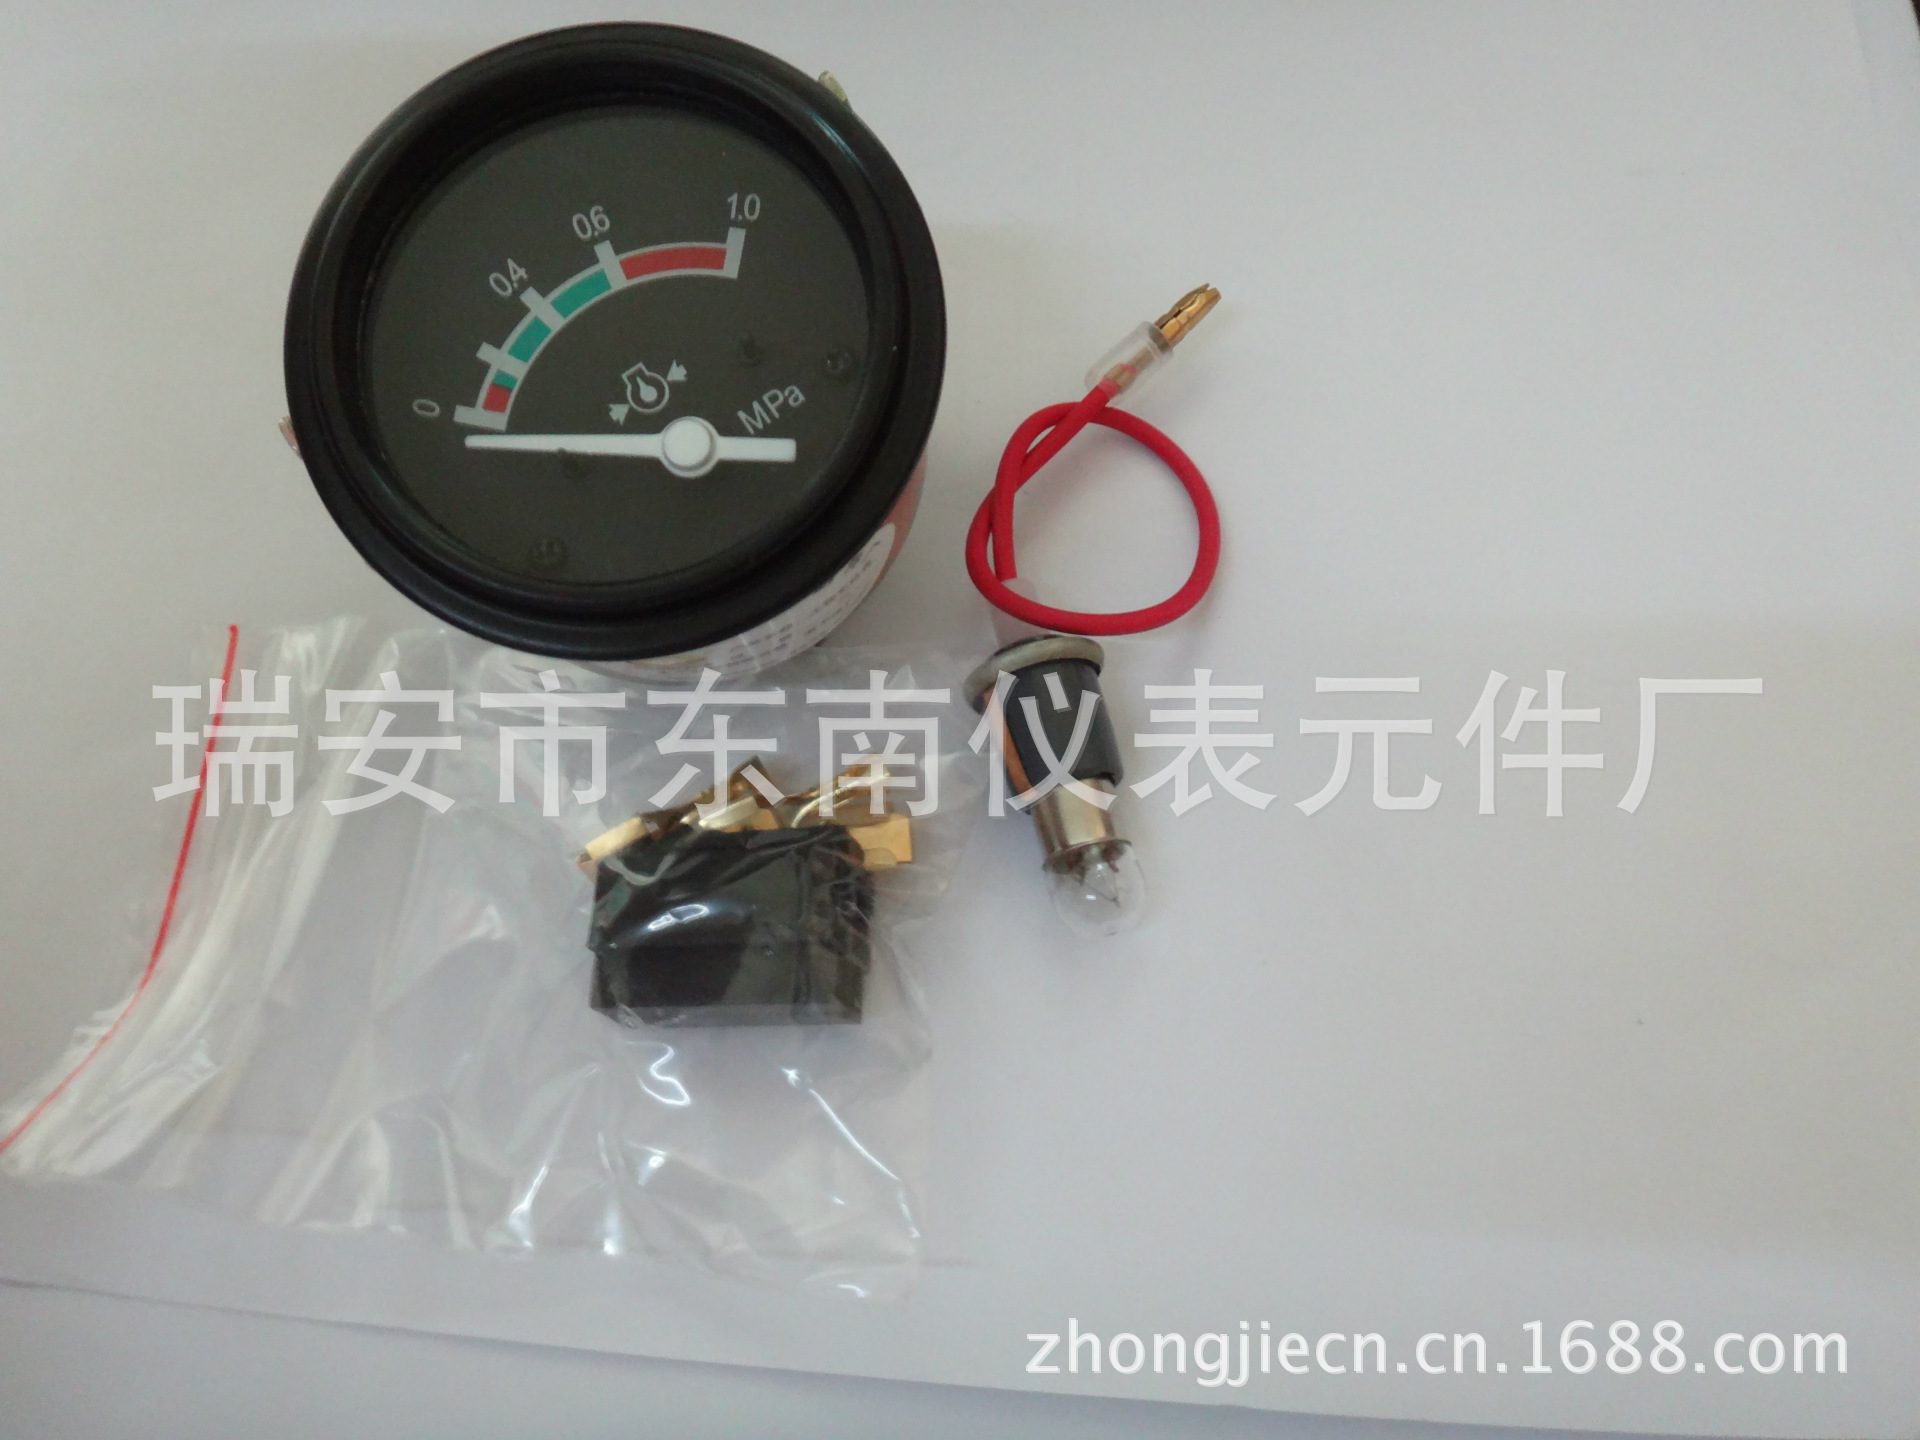 電感油壓表YY242-2C 0-1.0MPA 正麵